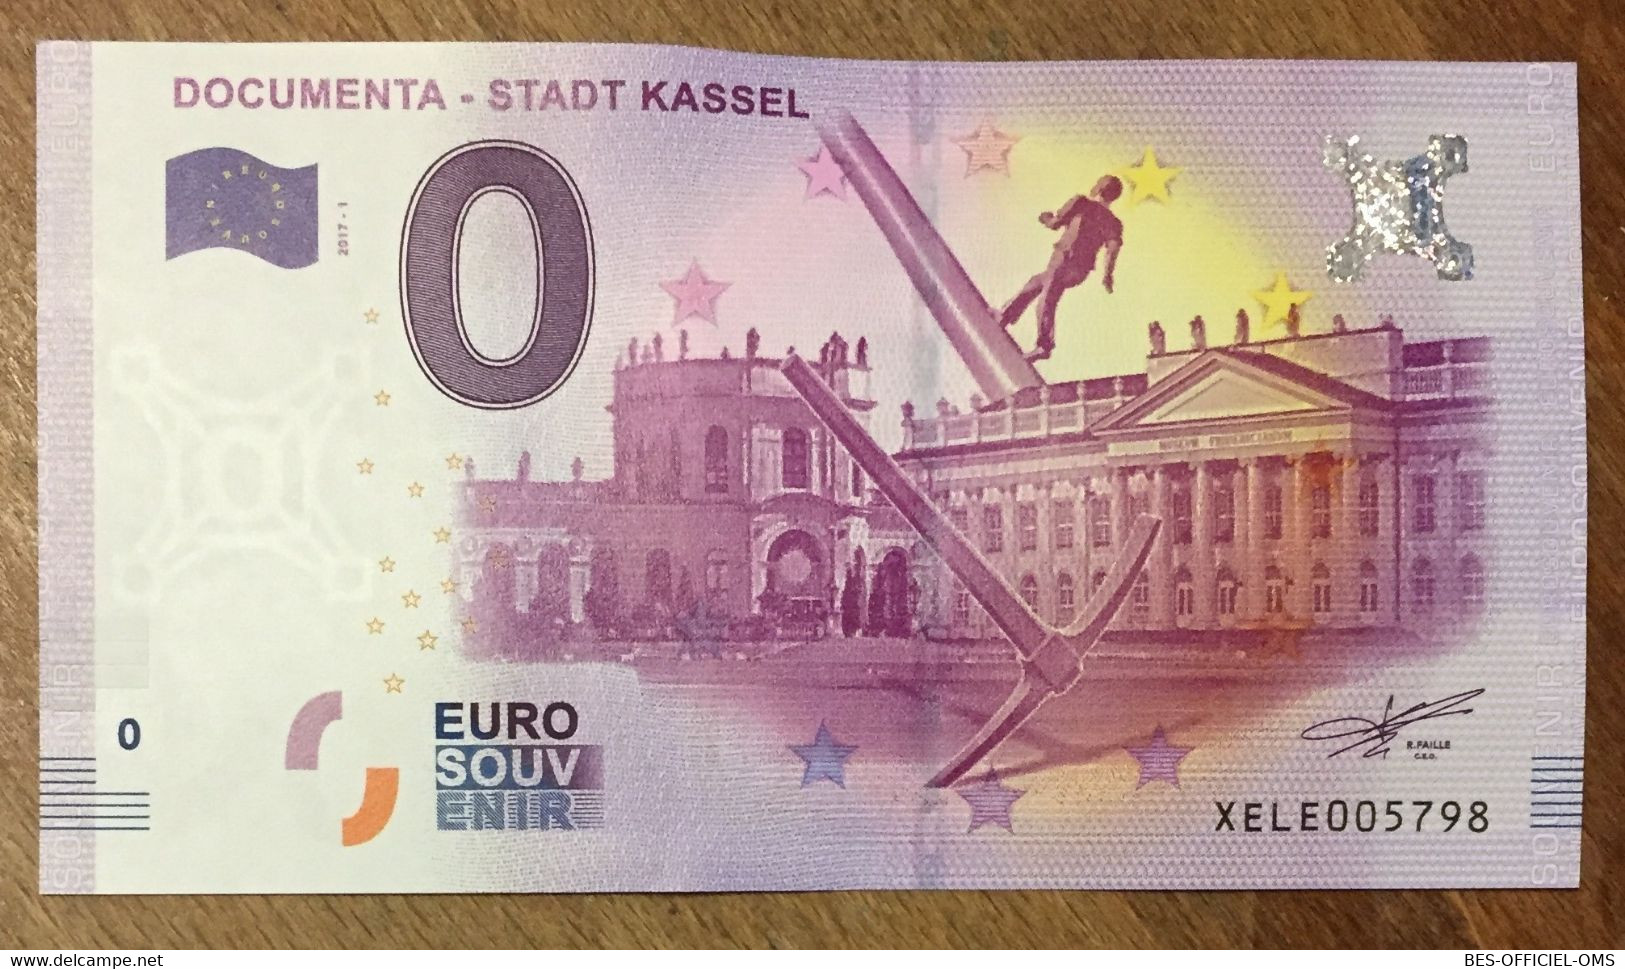 2017 BILLET 0 EURO SOUVENIR ALLEMAGNE DEUTSCHLAND DOCUMENTA-STADT KASSEL ZERO 0 EURO SCHEIN BANKNOTE PAPER MONEY - [17] Fakes & Specimens